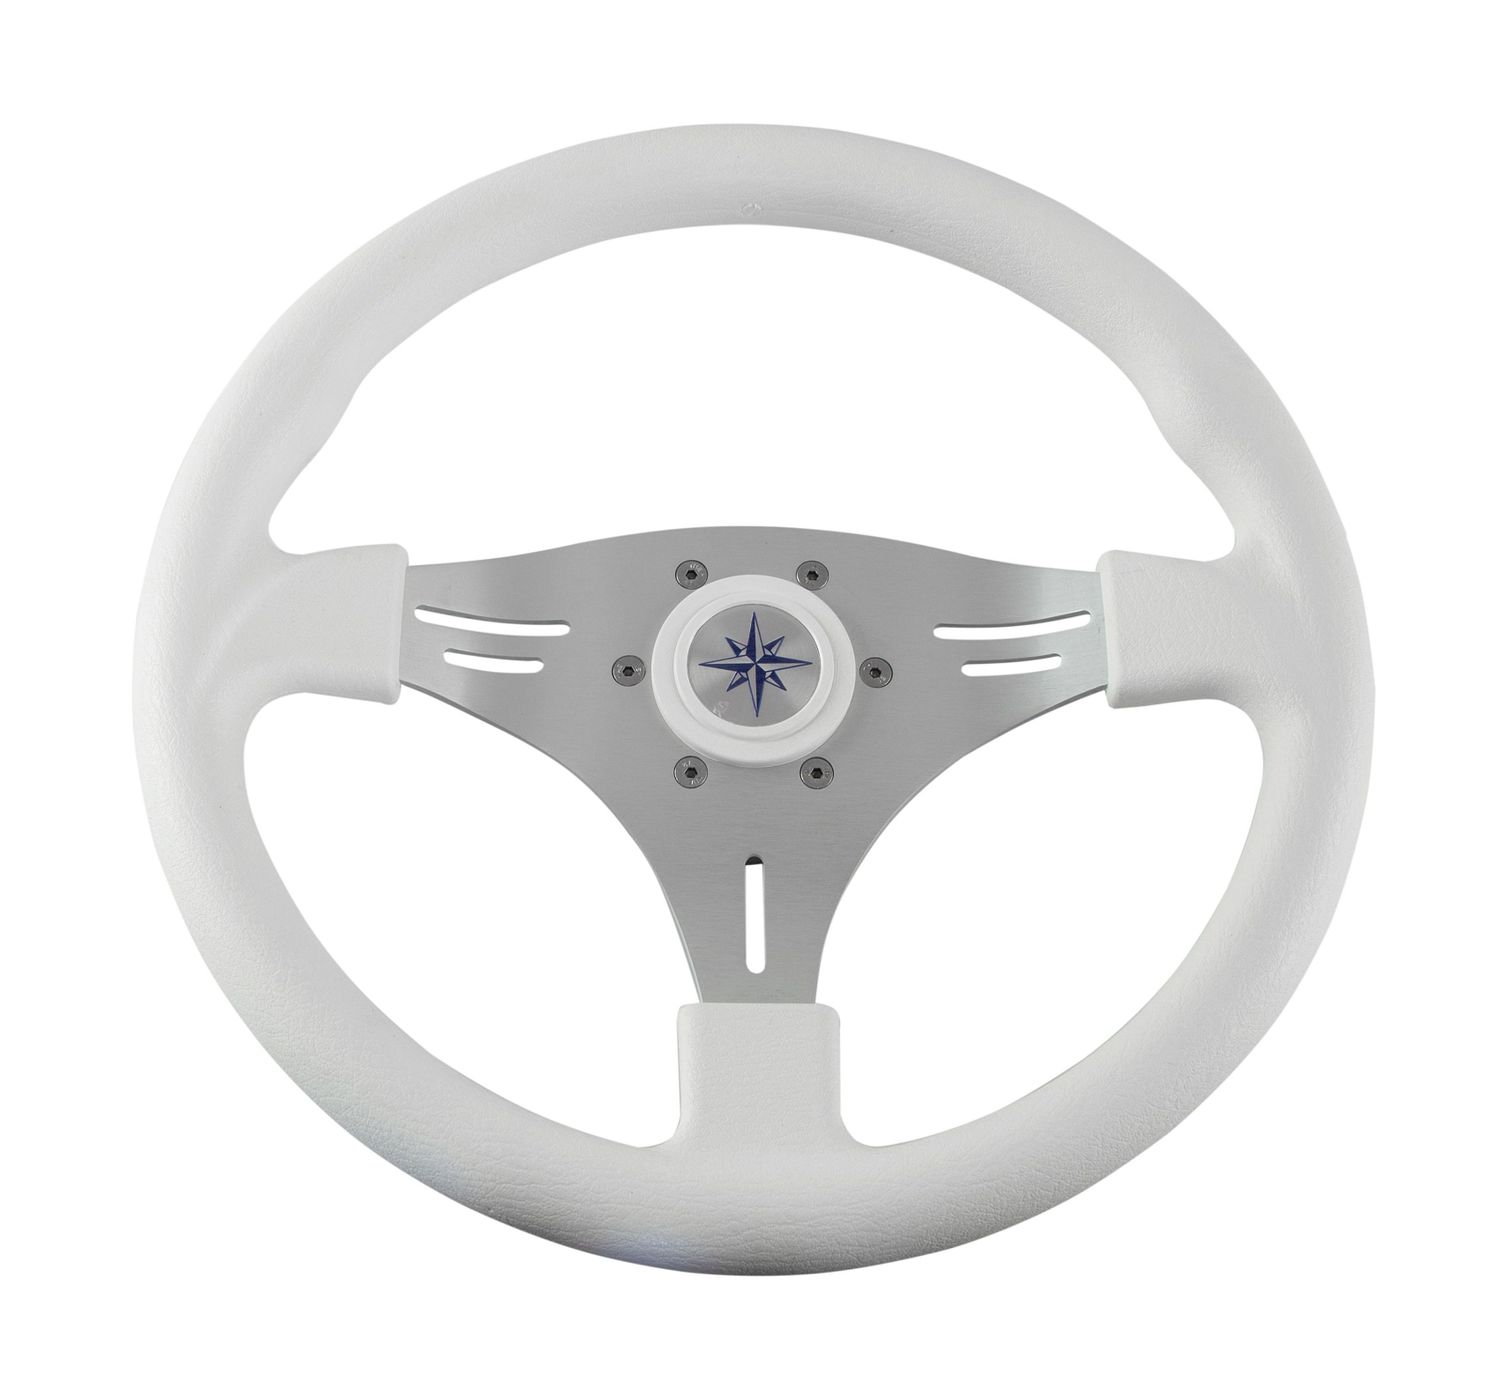 Рулевое колесо MANTA обод белый, спицы серебряные д. 355 мм VN70551-08 рулевое колесо leader tanegum белый обод серебряные спицы д 330 мм vn7330 08